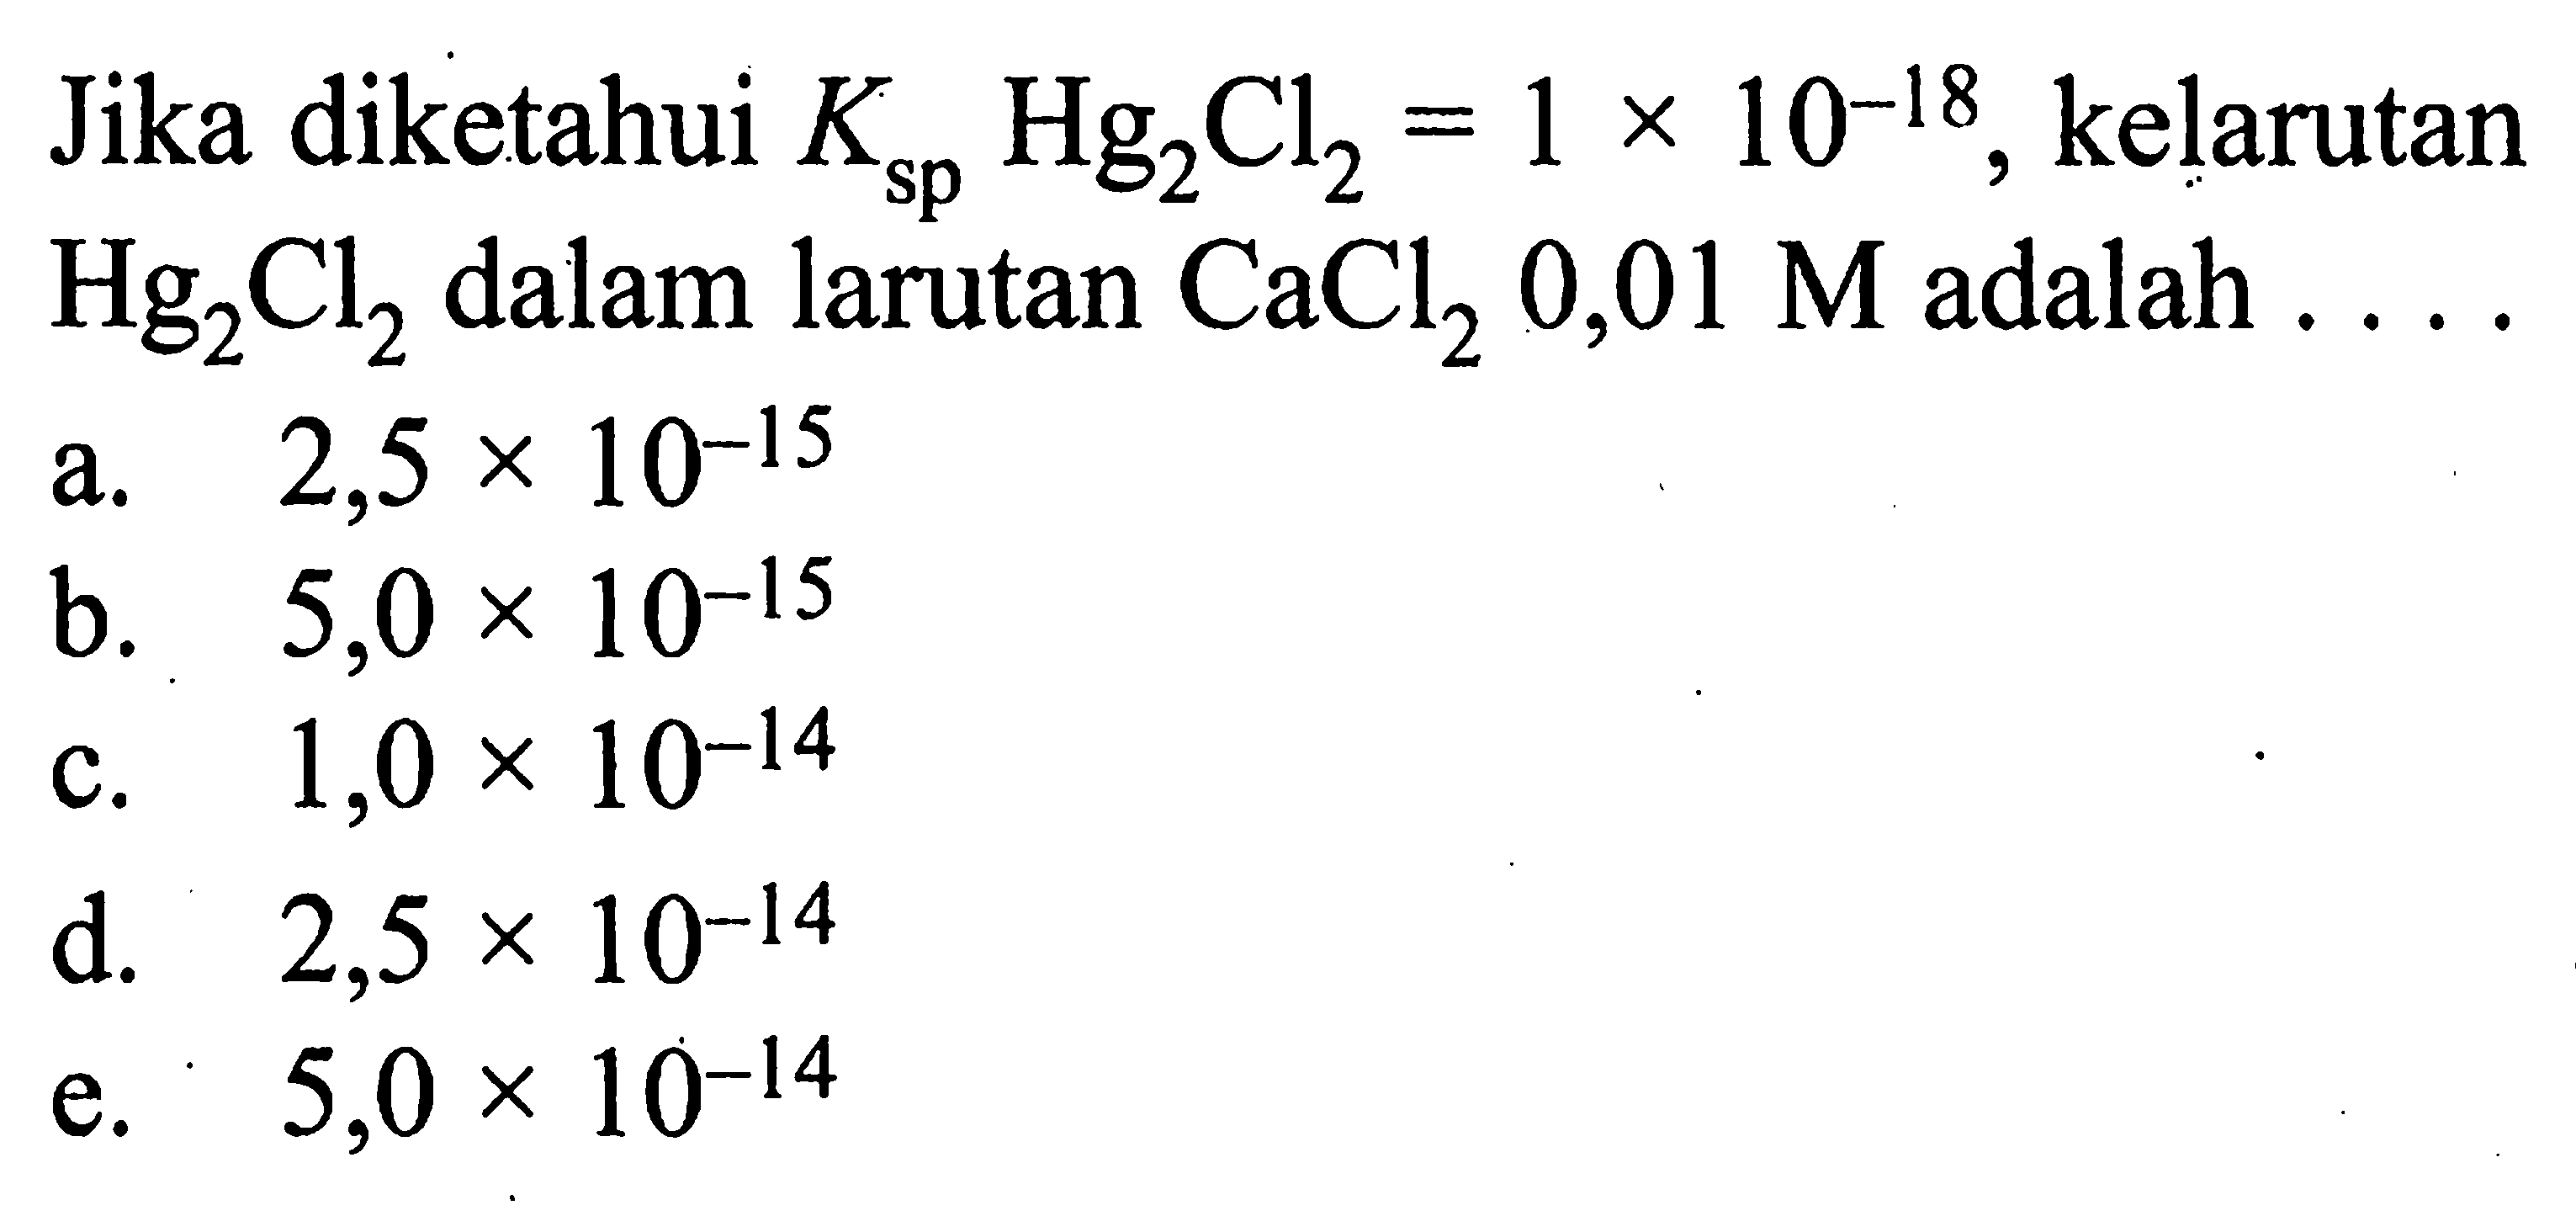 Jika diketahui Ksp Hg2Cl2=1 x 10^-18, kelarutan Hg2Cl2 dalam larutan CaCl2 0,01 M adalah.... 